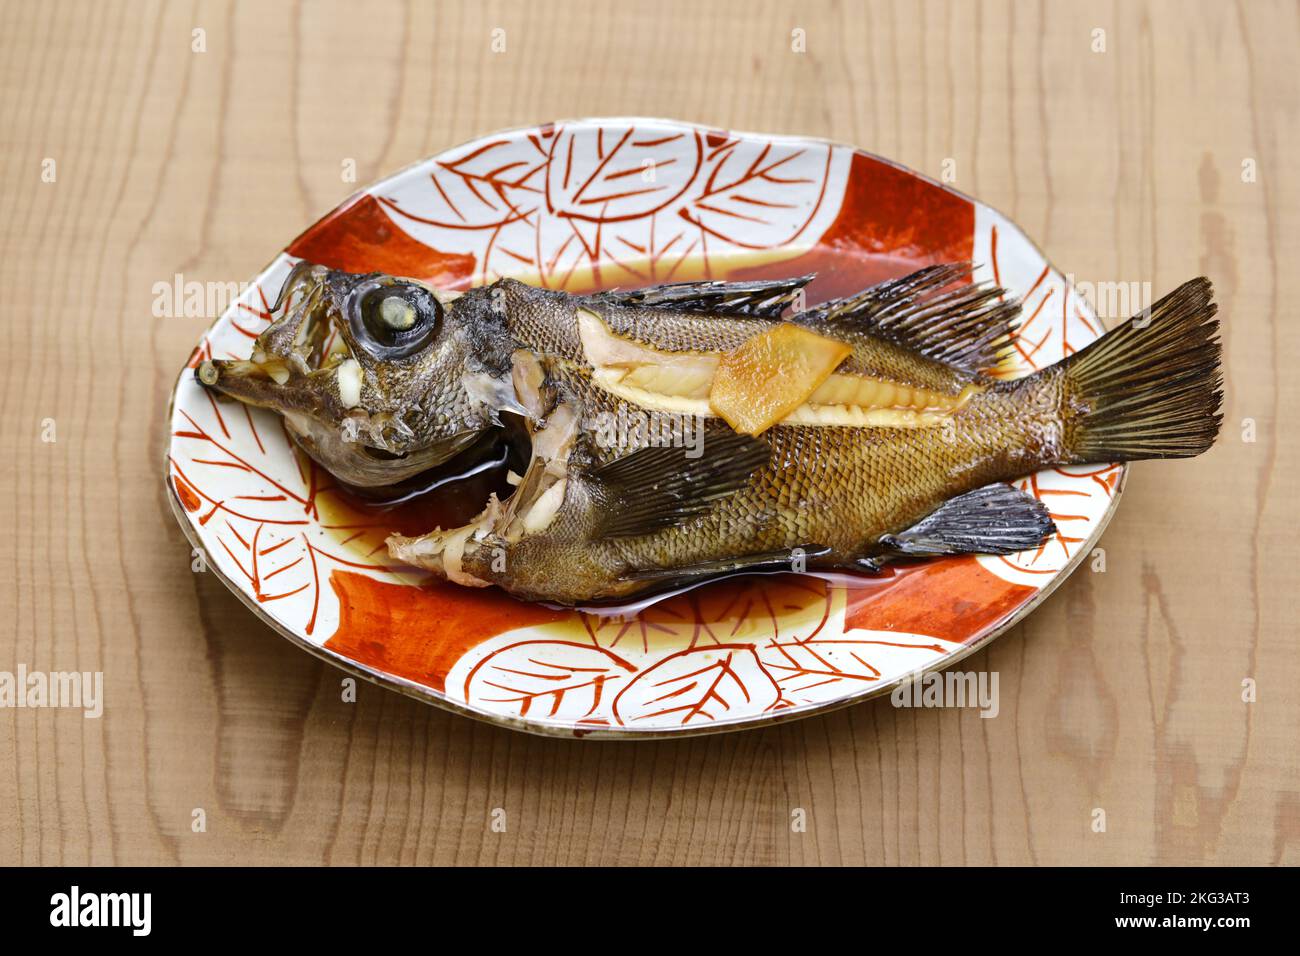 kuro mebaru no nitsuke (pez espada marrón a fuego lento), cocina japonesa Foto de stock